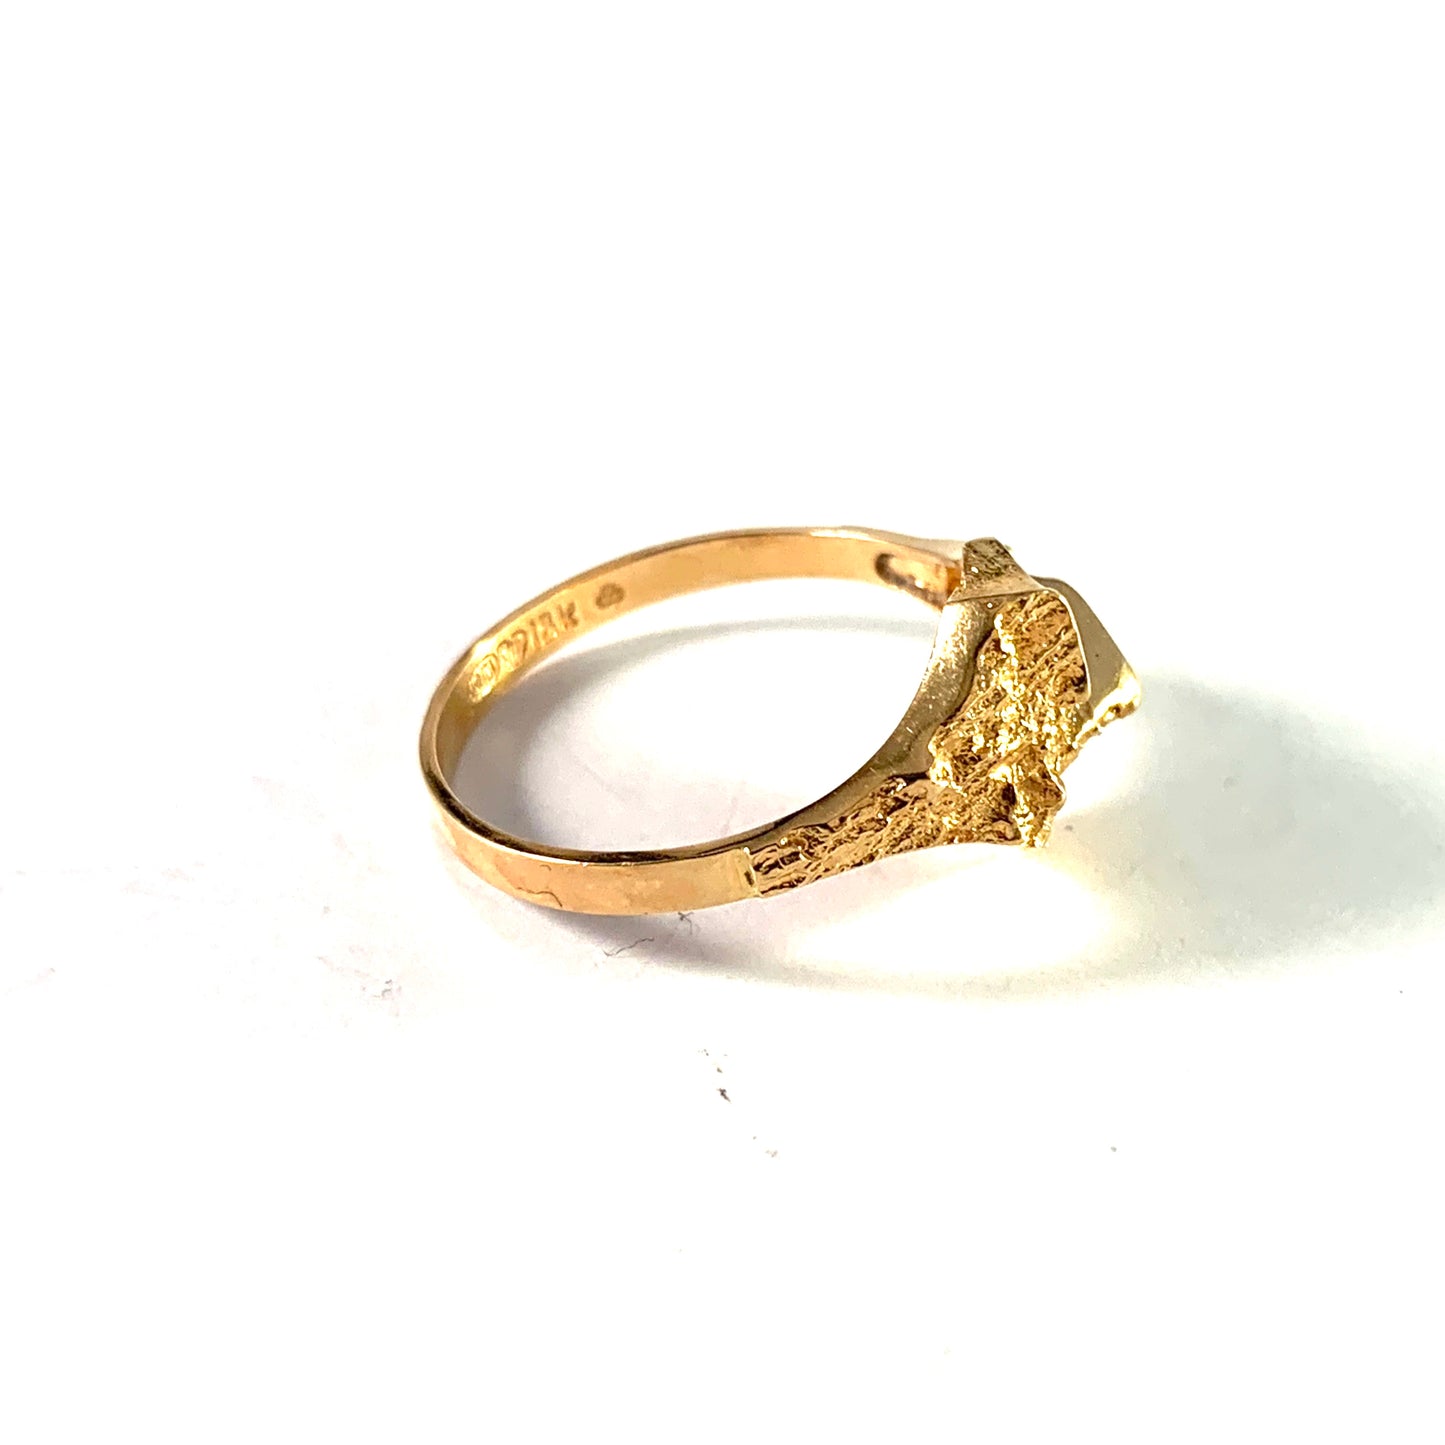 Maker RM, Finland c 1970s 18k Gold Unisex Ring.